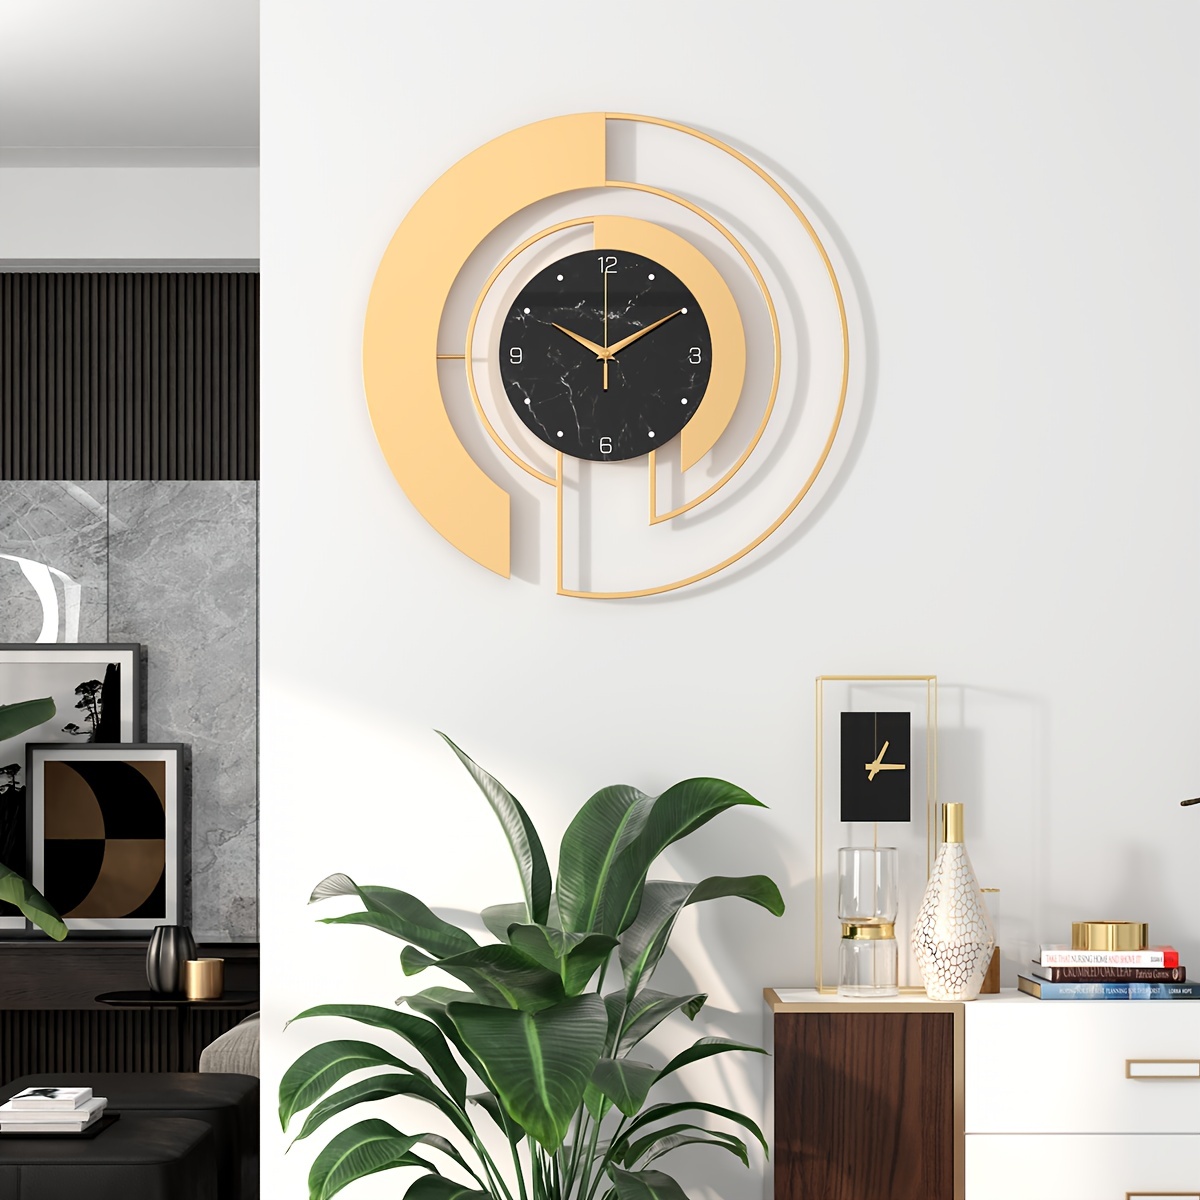 Reloj de pared grande para decoración de sala de estar, moderno reloj de  pared silencioso y decorativo de 15.7 pulgadas, funciona con pilas, no hace